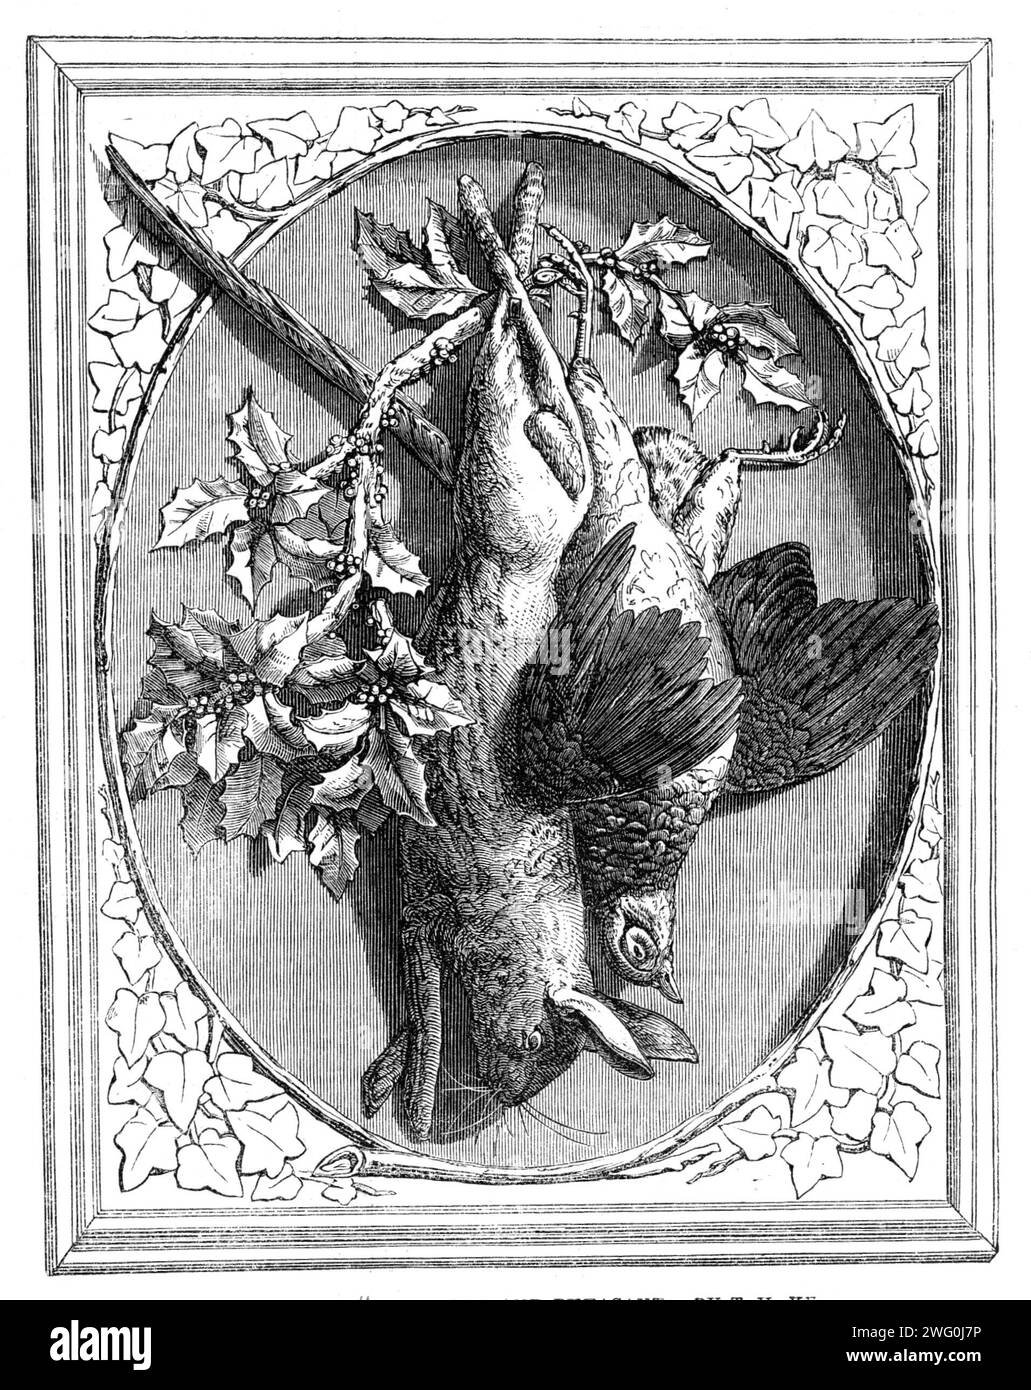 The International Exhibition: Carving in Wood, „The Hase and Fasan“, von T. H. Kendall, 1862. Der Hase und der Fasan, den wir hier darstellen, bilden eine Stilllebensgruppe... es ist von Mr. T. H. Kendall aus Warwick. Als ein Werk der nachahmenden Schnitzerei ist es sehr schön, das Gefieder des Vogels wird mit großer Zartheit und Wahrheit gegeben, und der runde Charakter, der in Federgruppen und in Einzelfedern vorkommt, ist gut empfunden und gemacht. Die Handlung, oder besser gesagt der Handlungswille im Spiel, die aus Passivität oder Tod resultiert, steht im Kontrast zu der Starrheit und dem Leben von Stockfoto